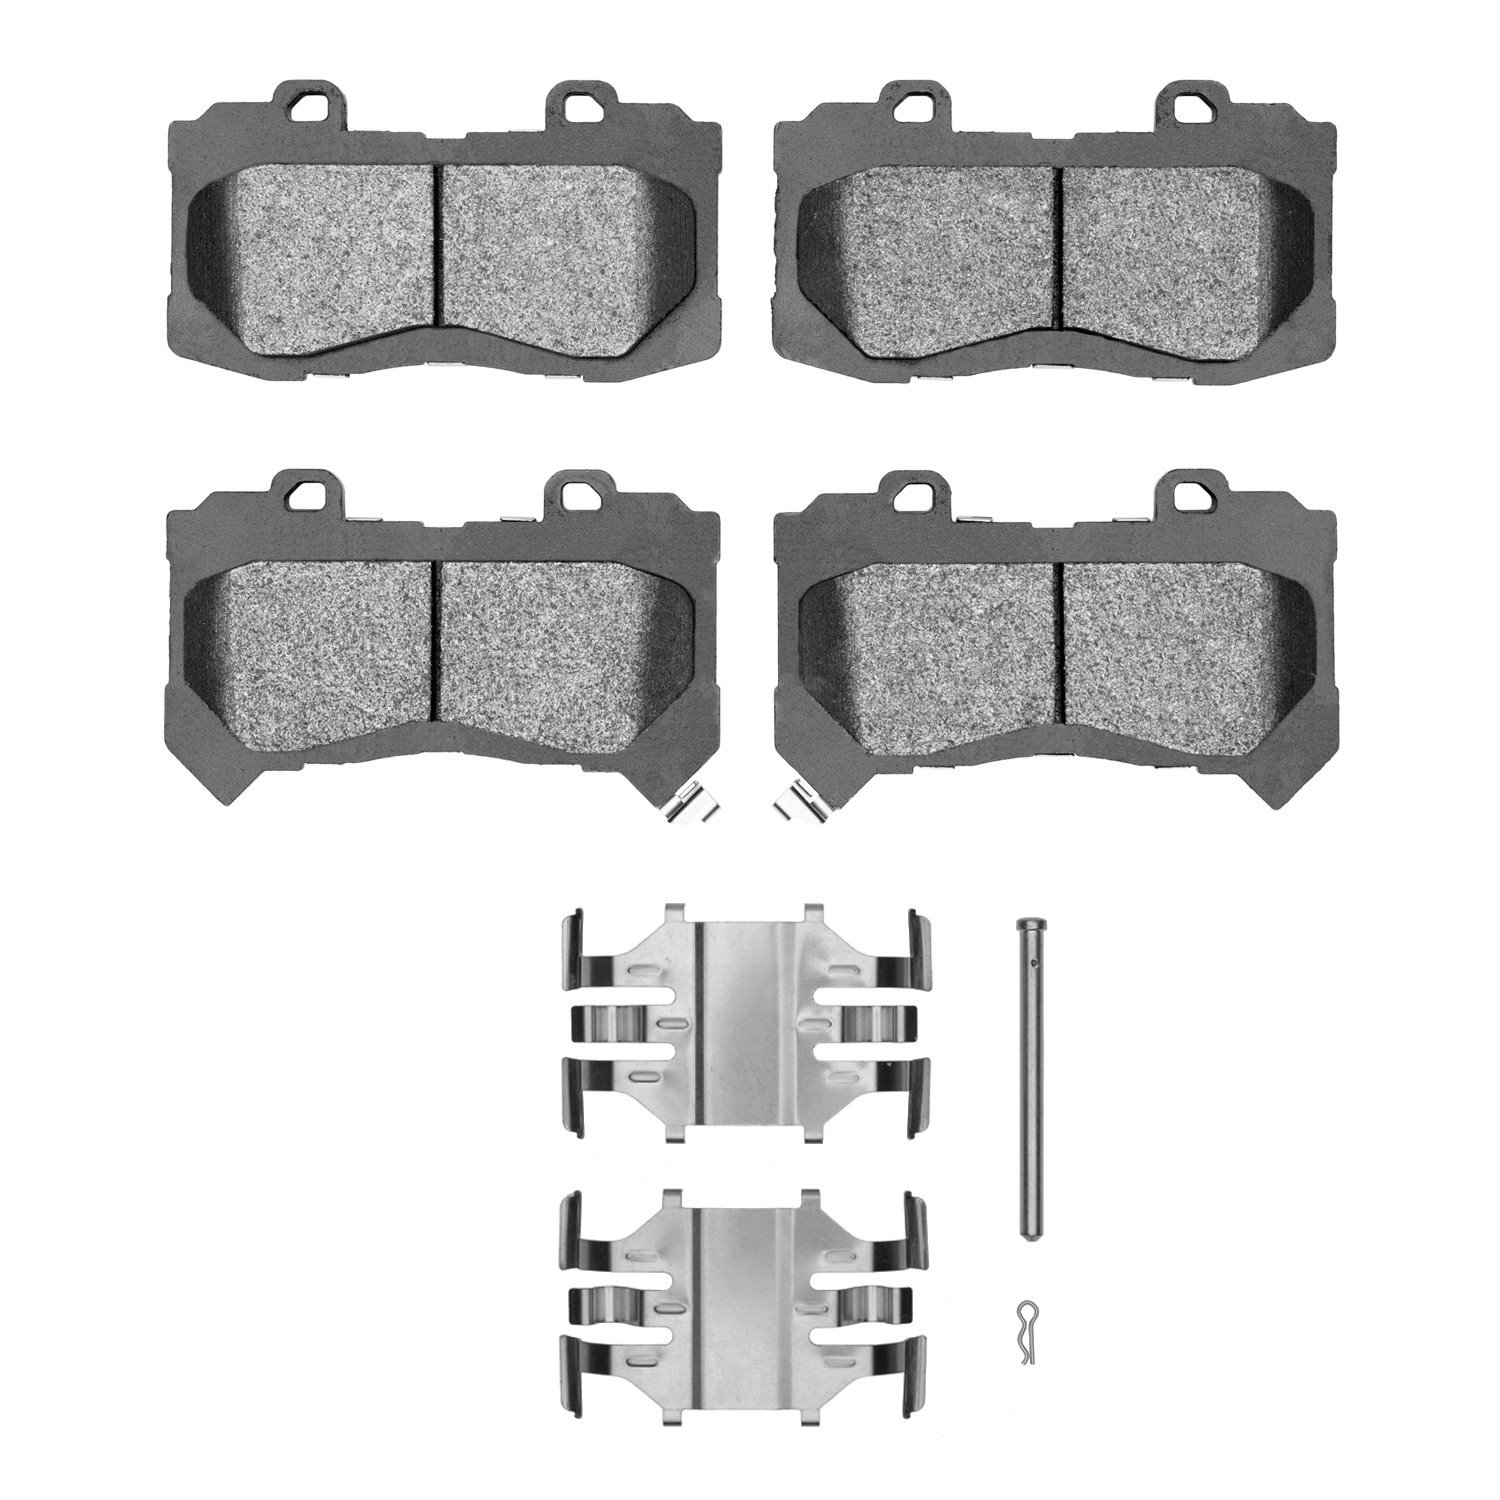 1310-1802-01 3000-Series Ceramic Brake Pads & Hardware Kit, 2015-2020 GM, Position: Front